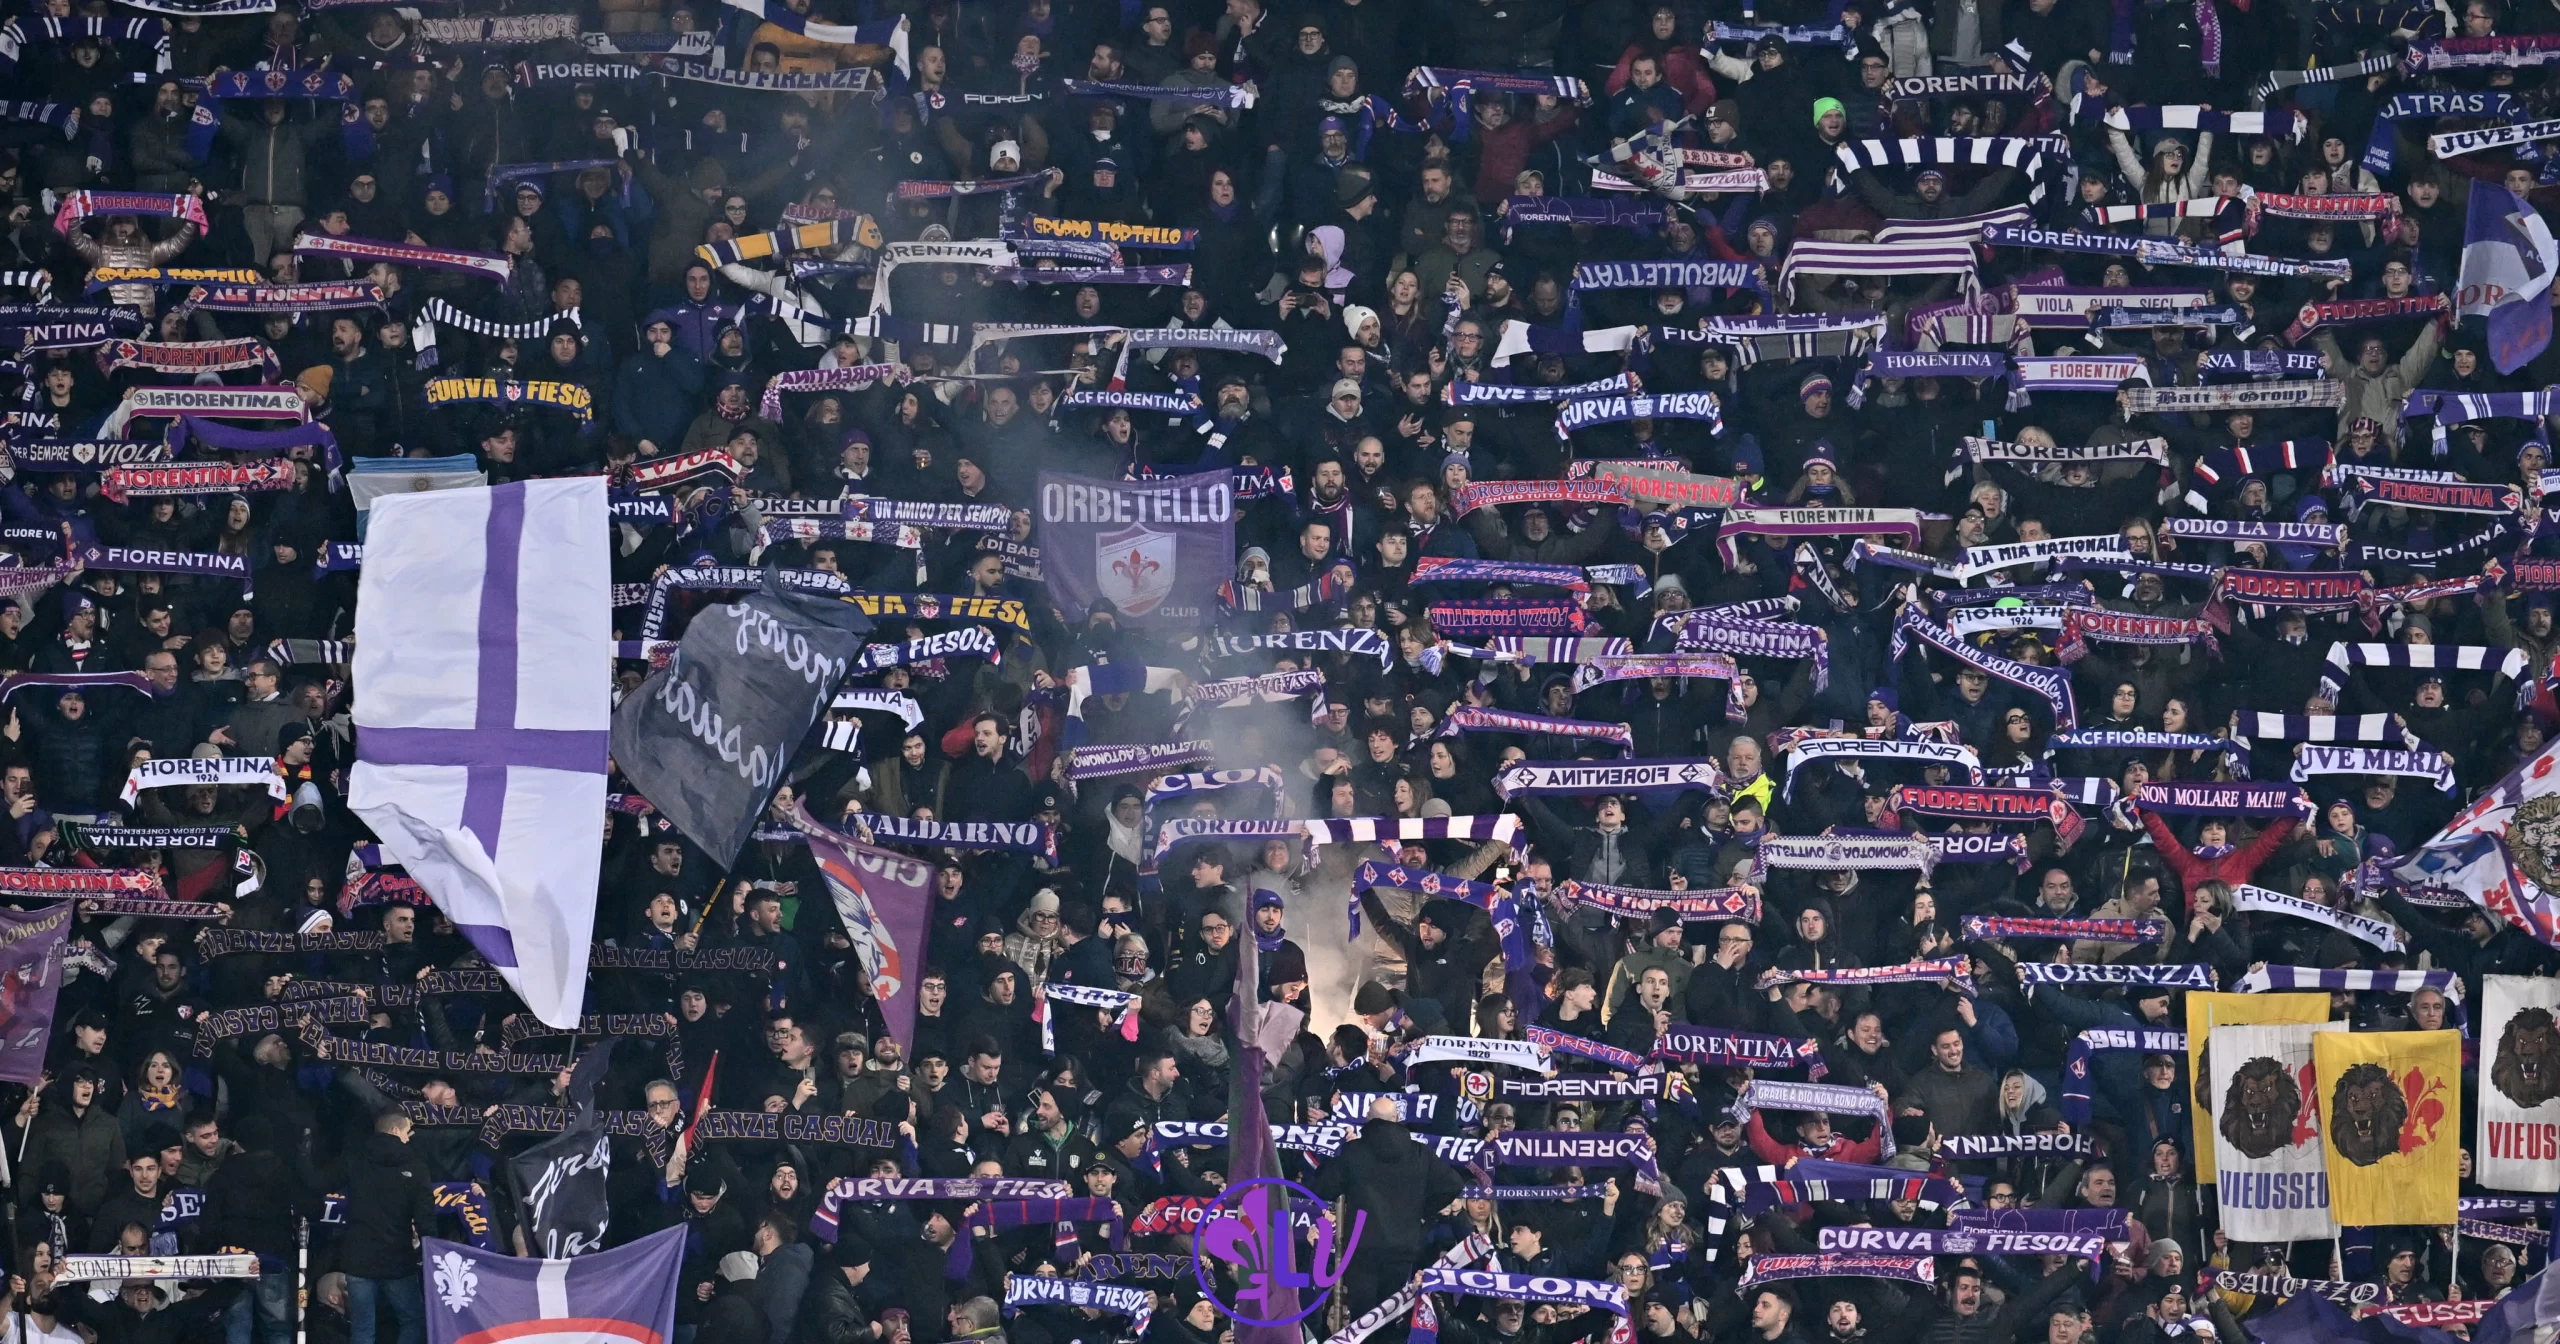 Salernitana-Fiorentina, ci siamo: ci saranno 350 tifosi viola a sostenere la squadra all’Arechi